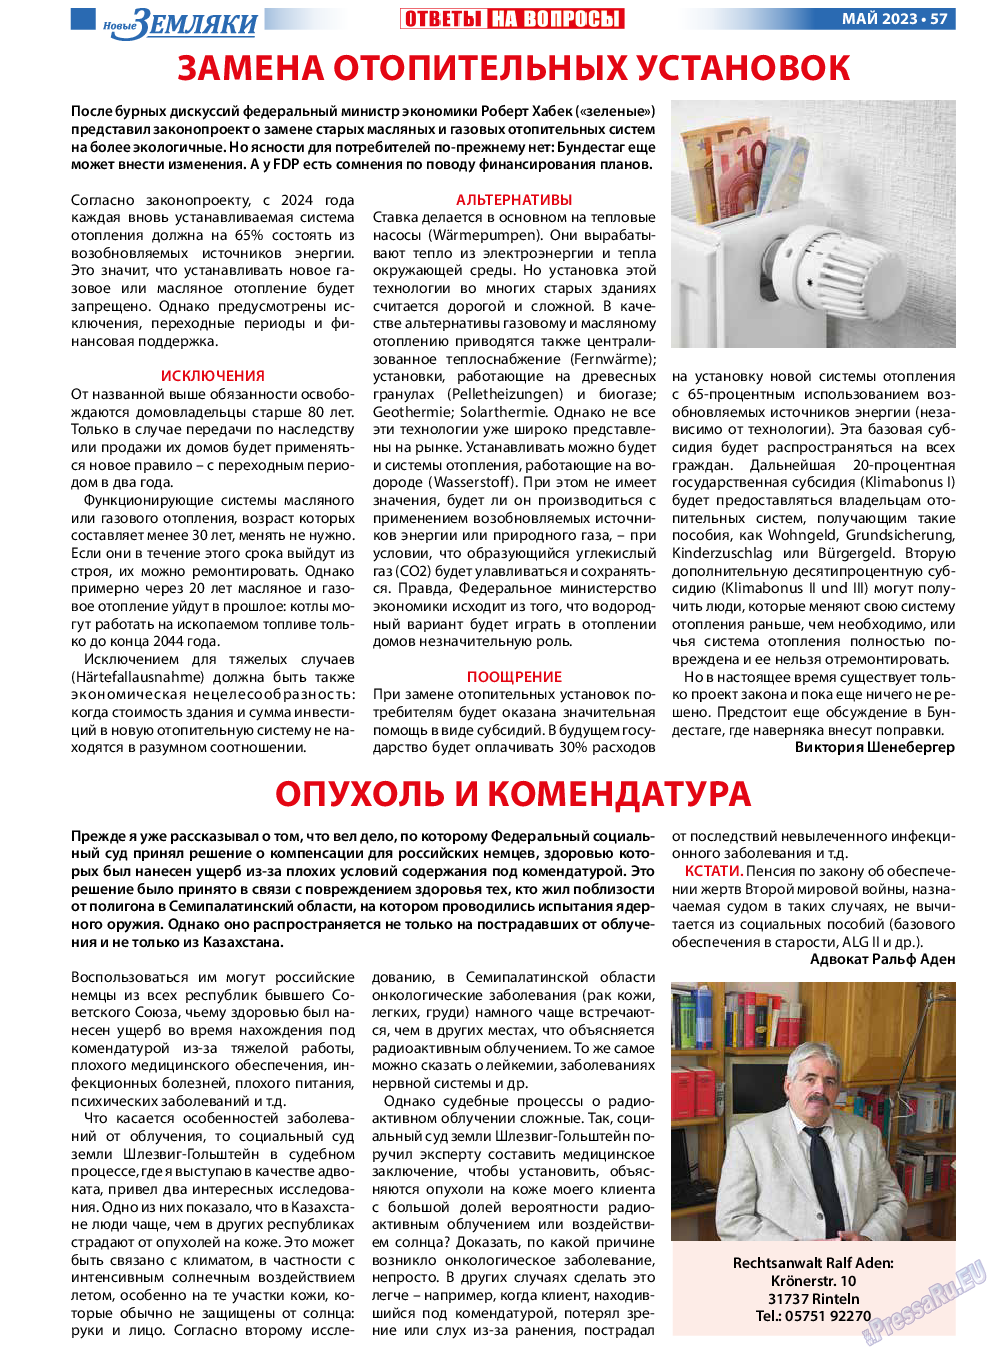 Новые Земляки, газета. 2023 №5 стр.57